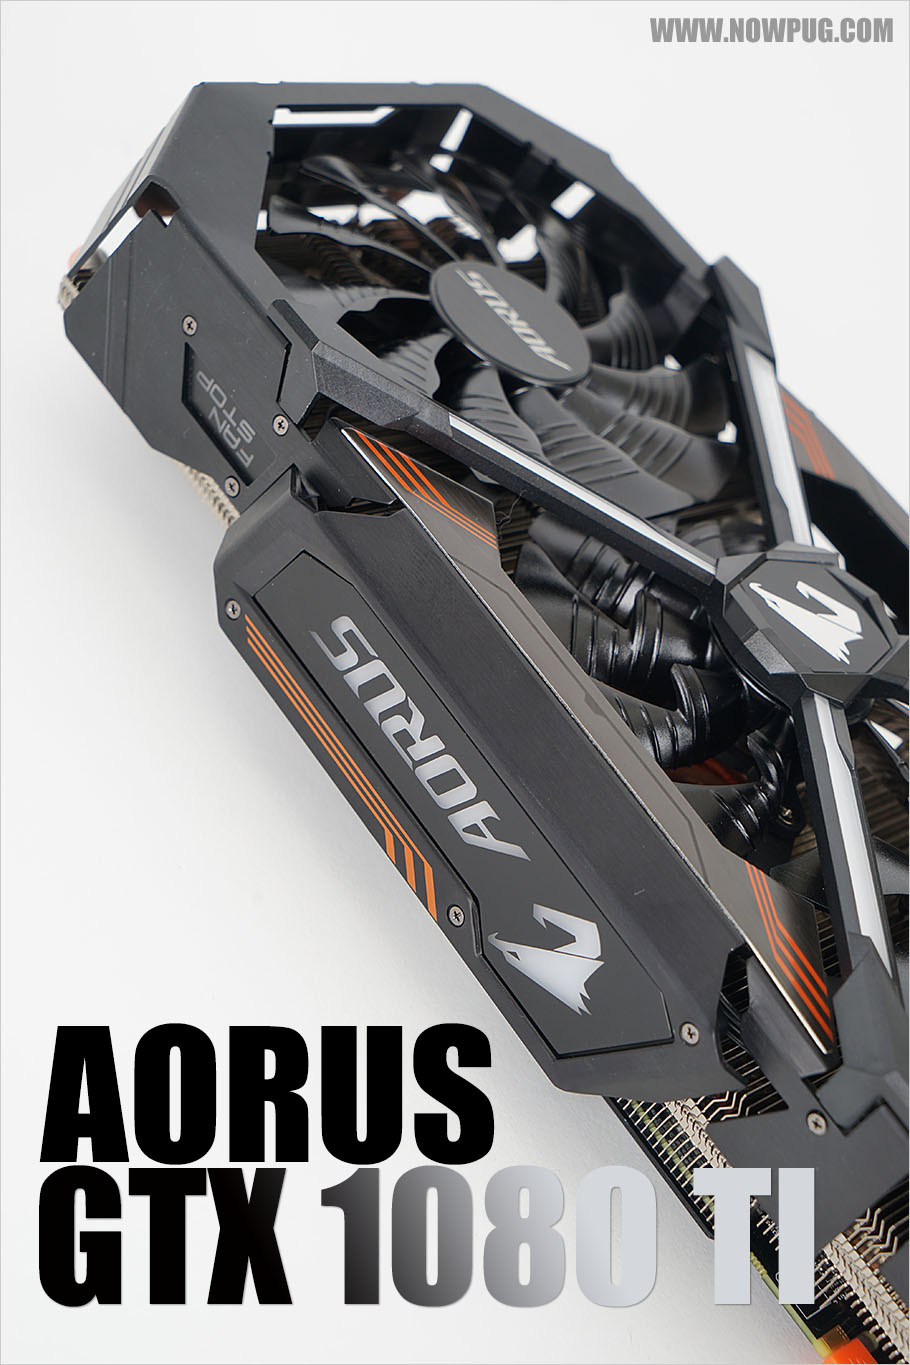 지상 최고의 그래픽 카드, AORUS GeForce GTX 1080 Ti를 소개합니다!